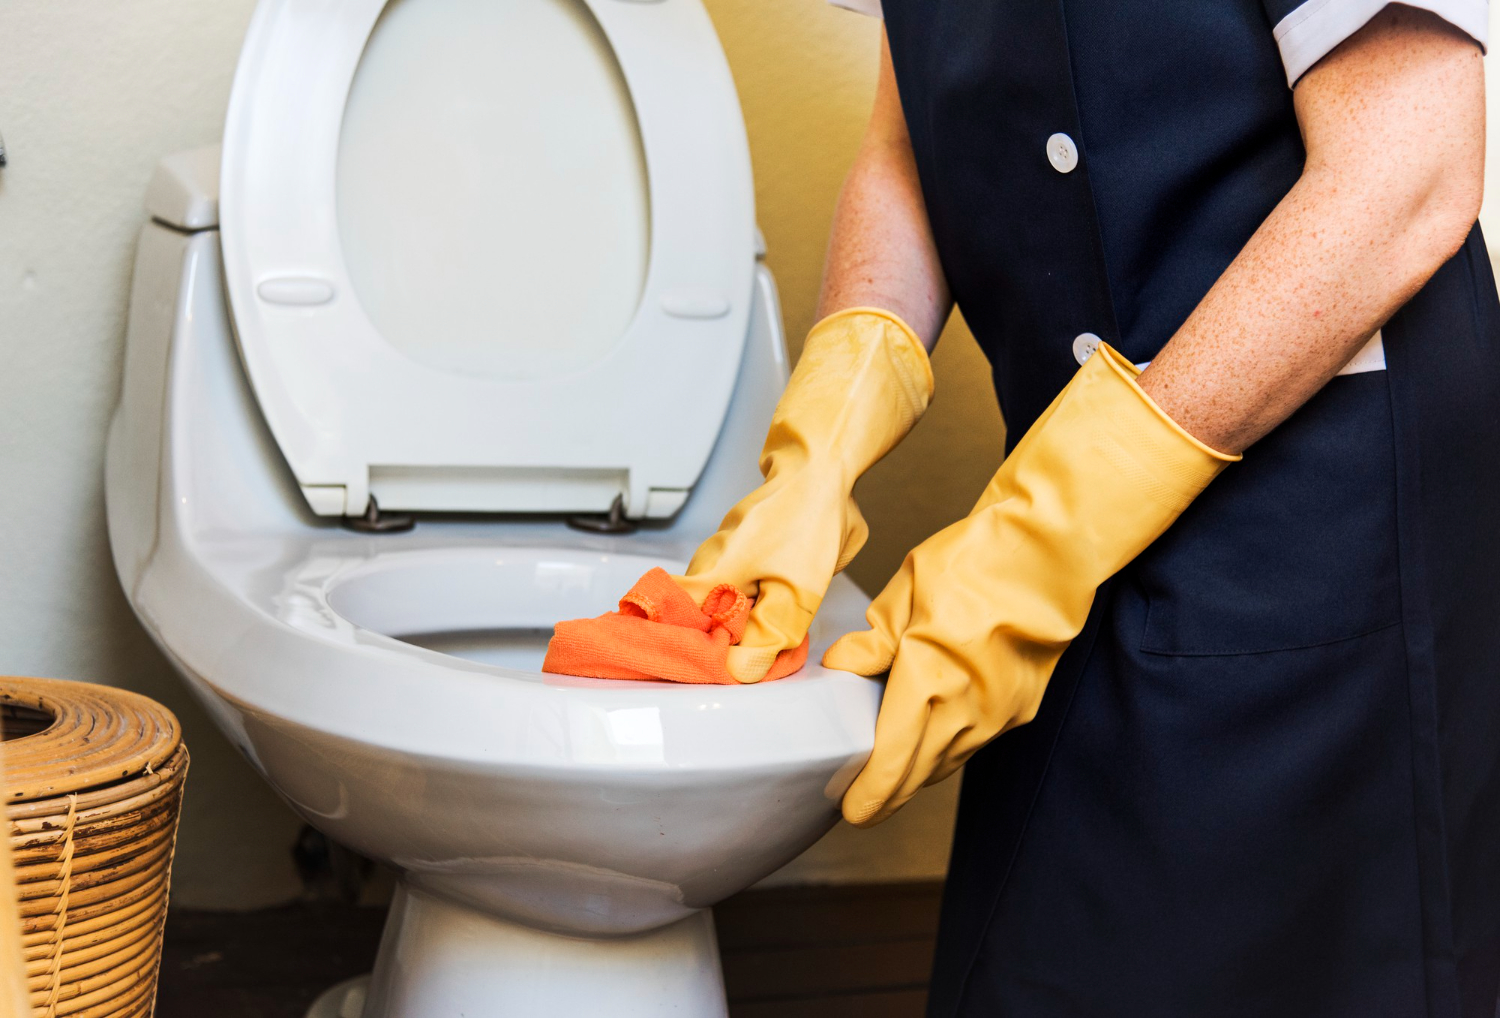 Desentupir o vaso sanitário: As dicas caseiras mais eficazes